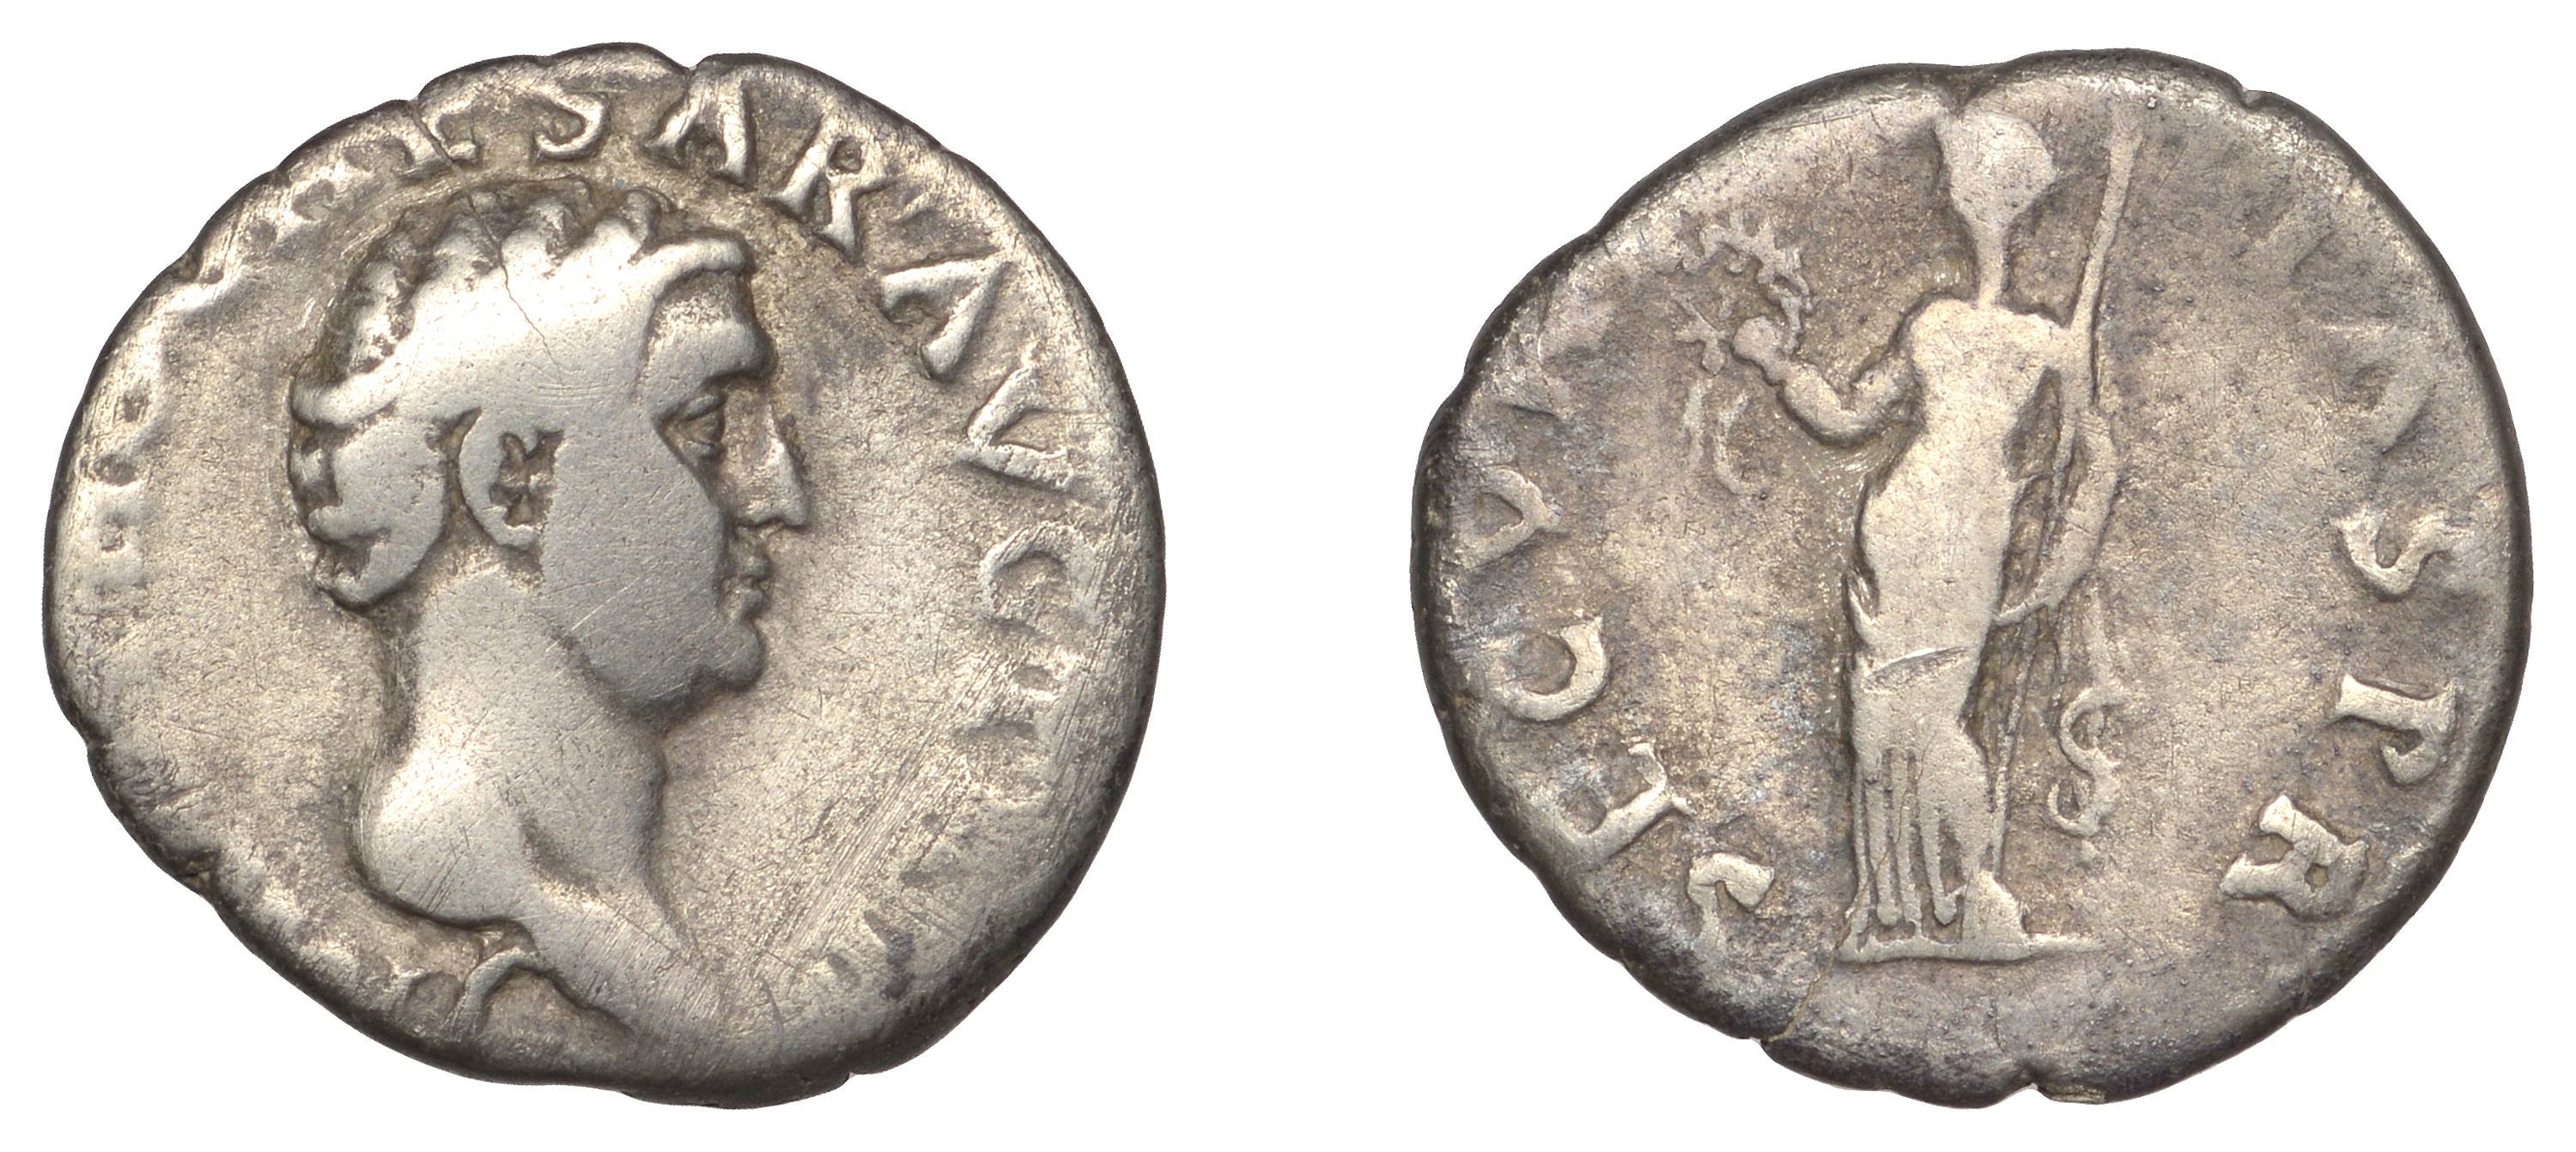 Roman Imperial Coinage, Otho, Denarius, 69, rev. Securitas standing facing, head left, holdi...